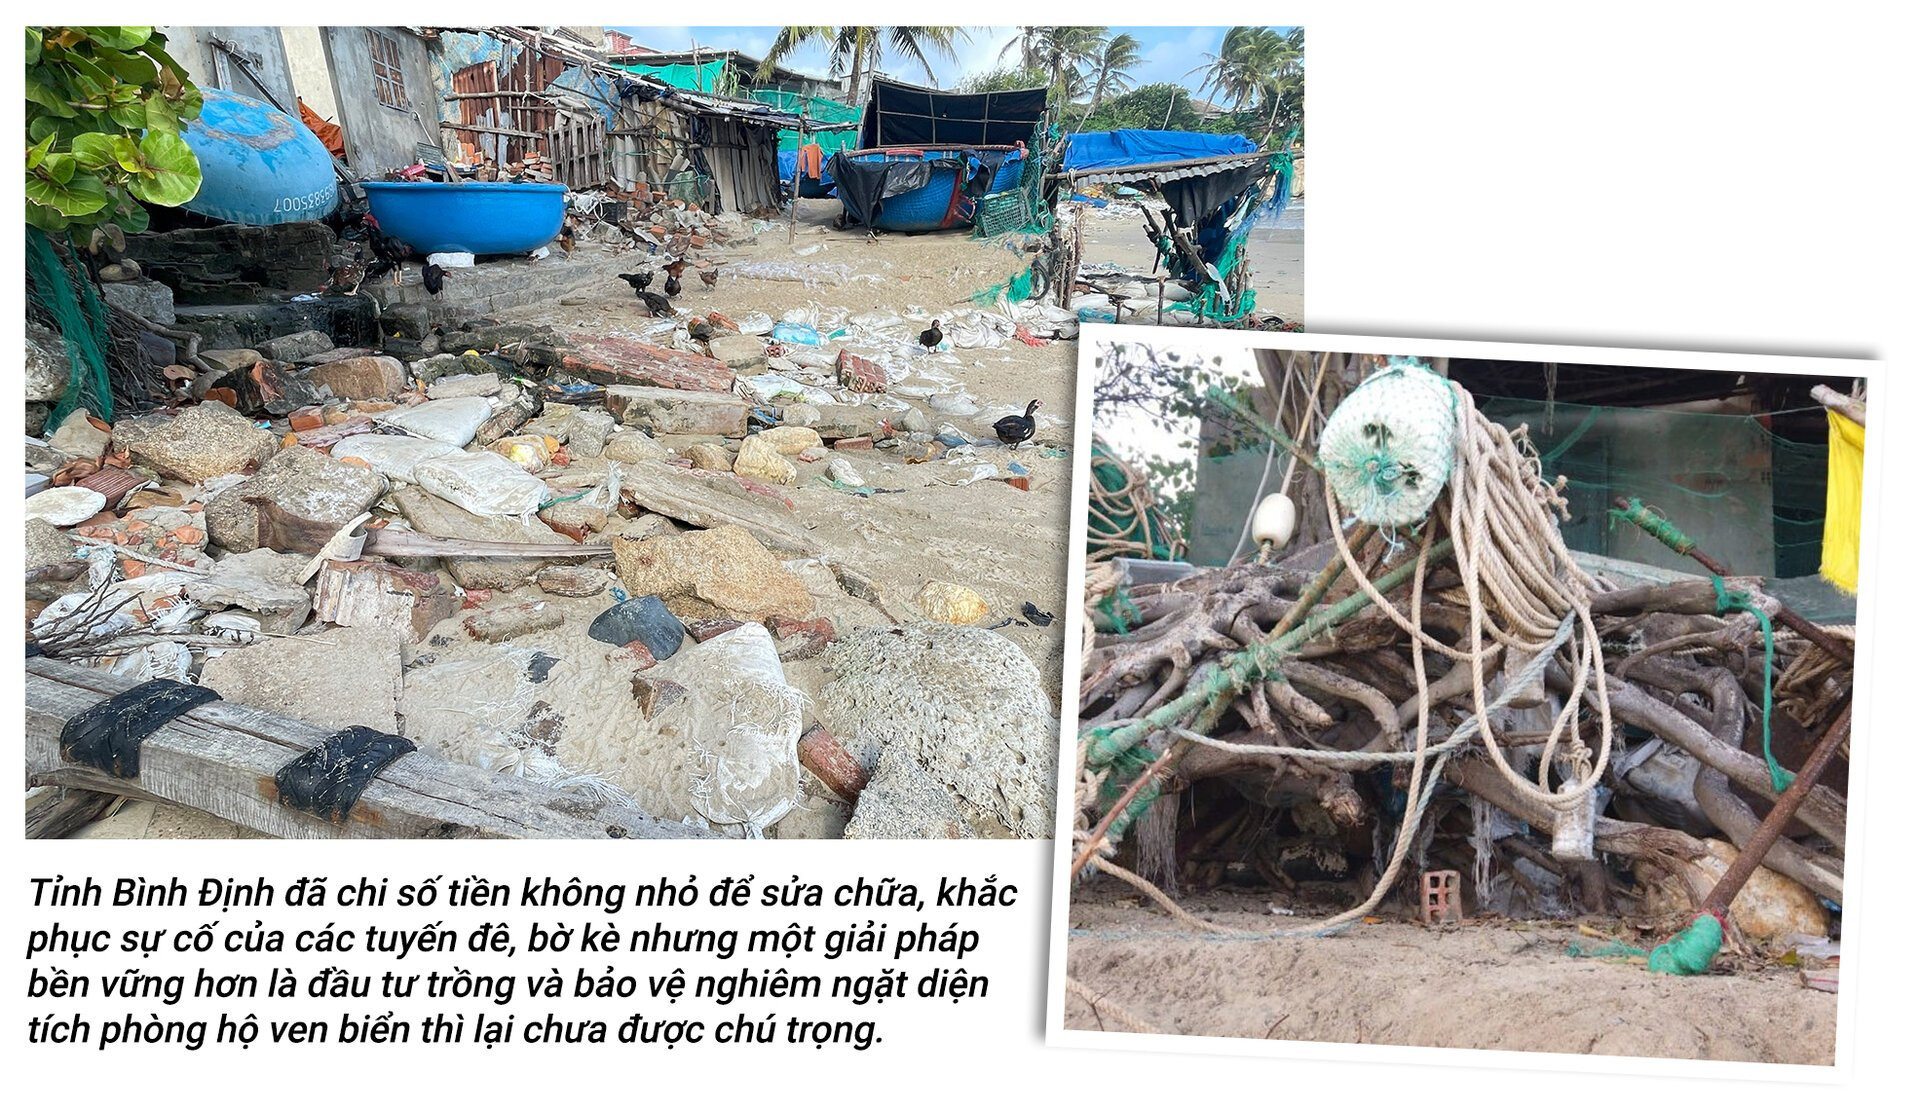 Rừng phòng hộ 'chết oan' ở Bình Định: Rừng mất, người than khóc - 6